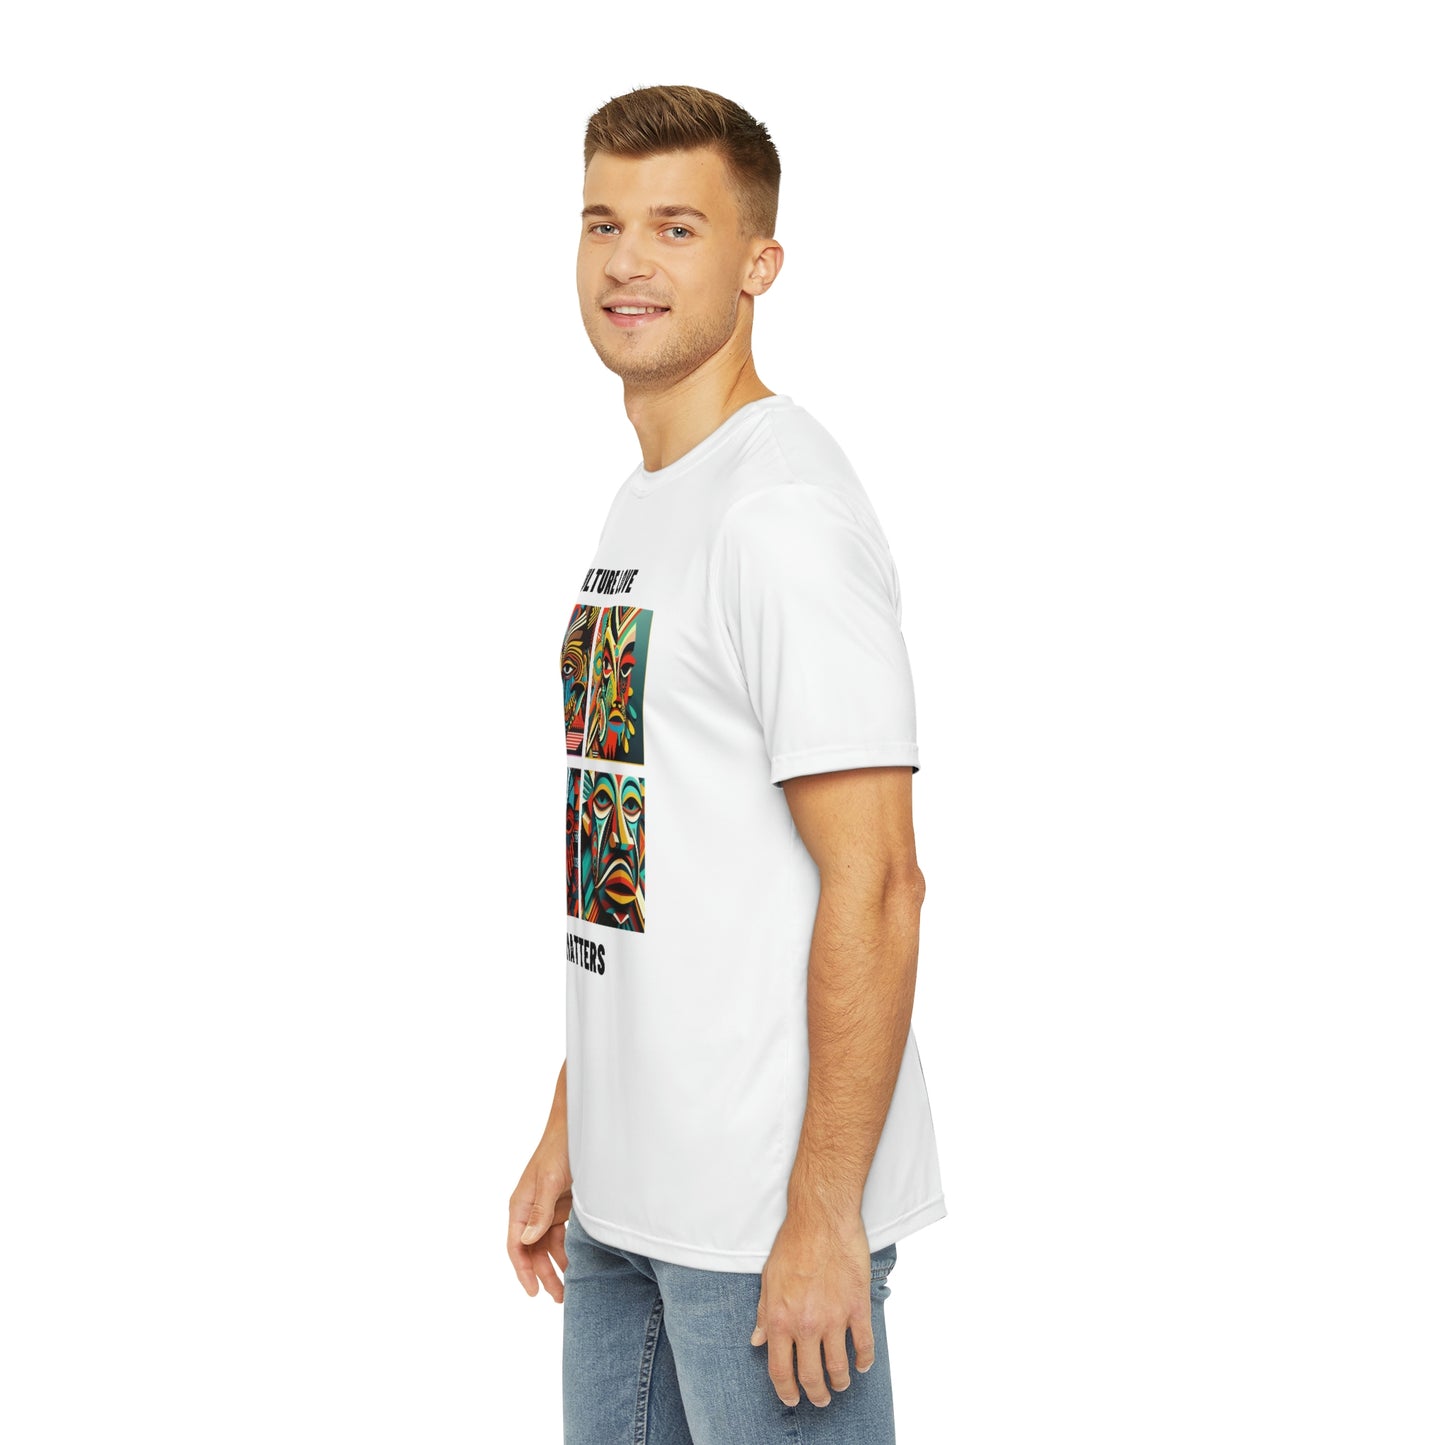 Unisex T-shirt - Official primitive store